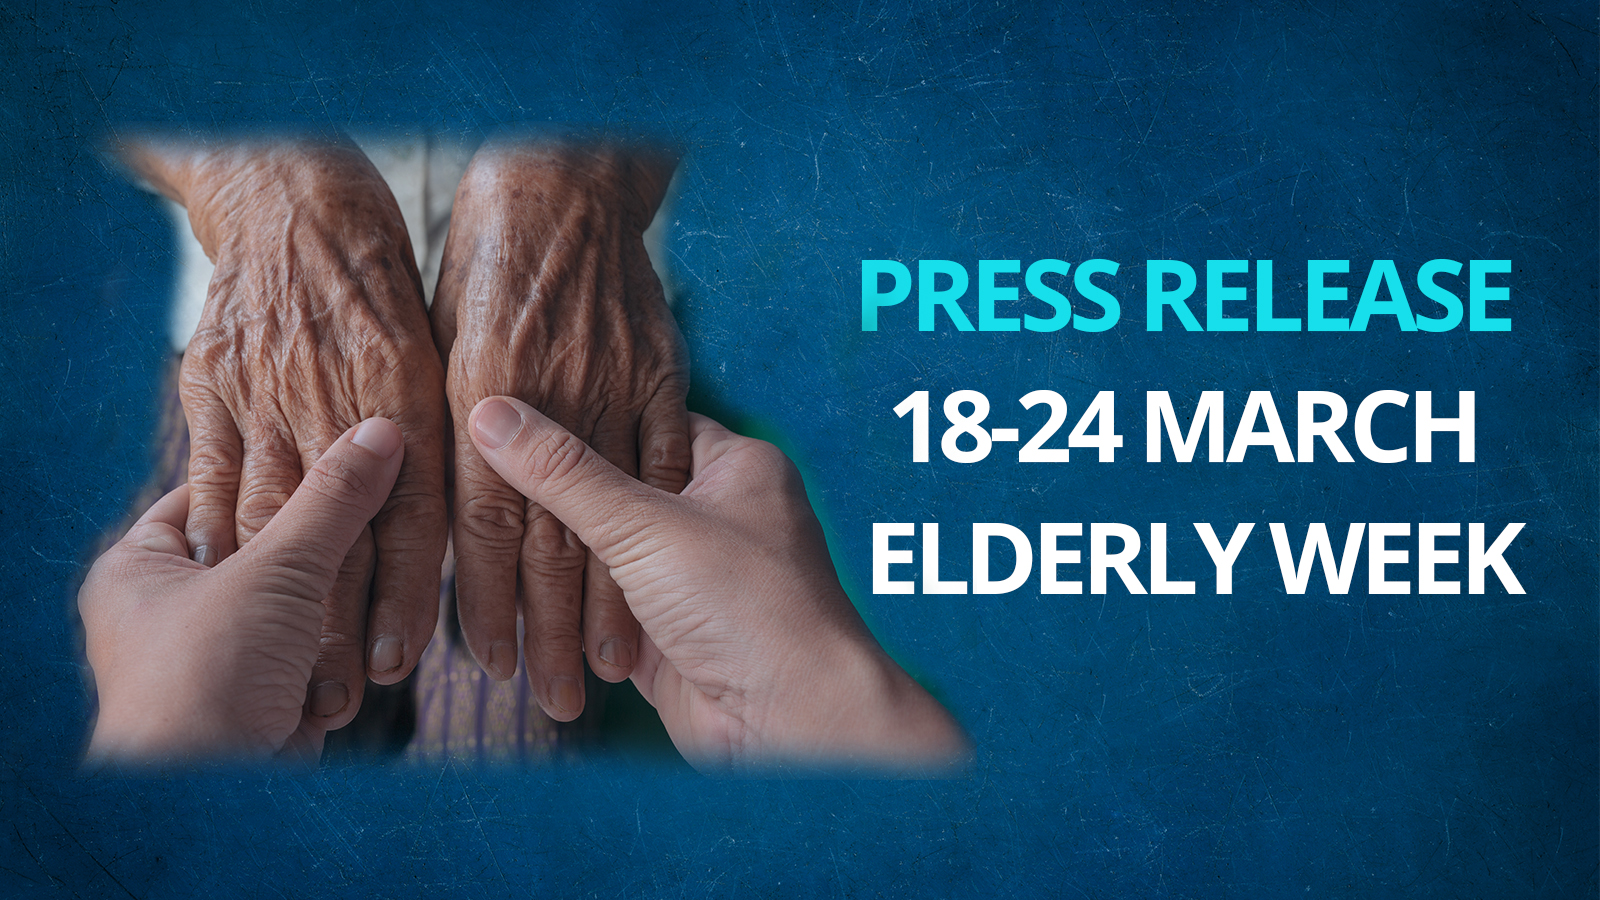 Press Release On The Elderly Week